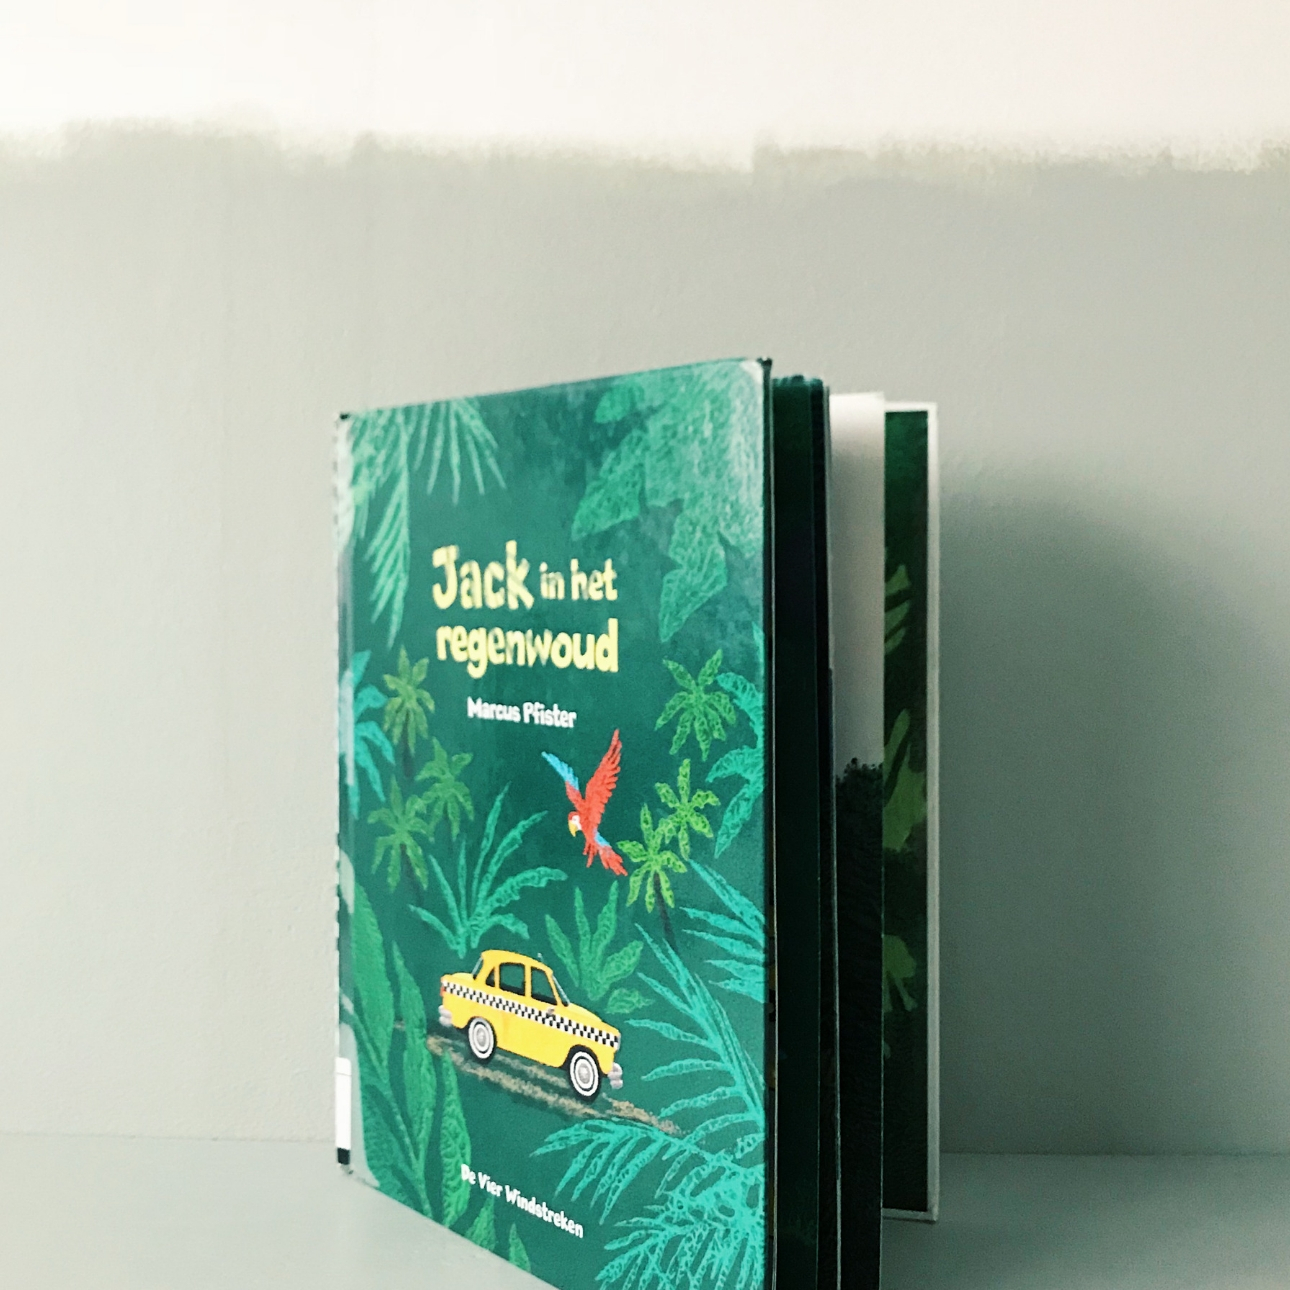 prentenboek jack in het regenwoud marcus pfister